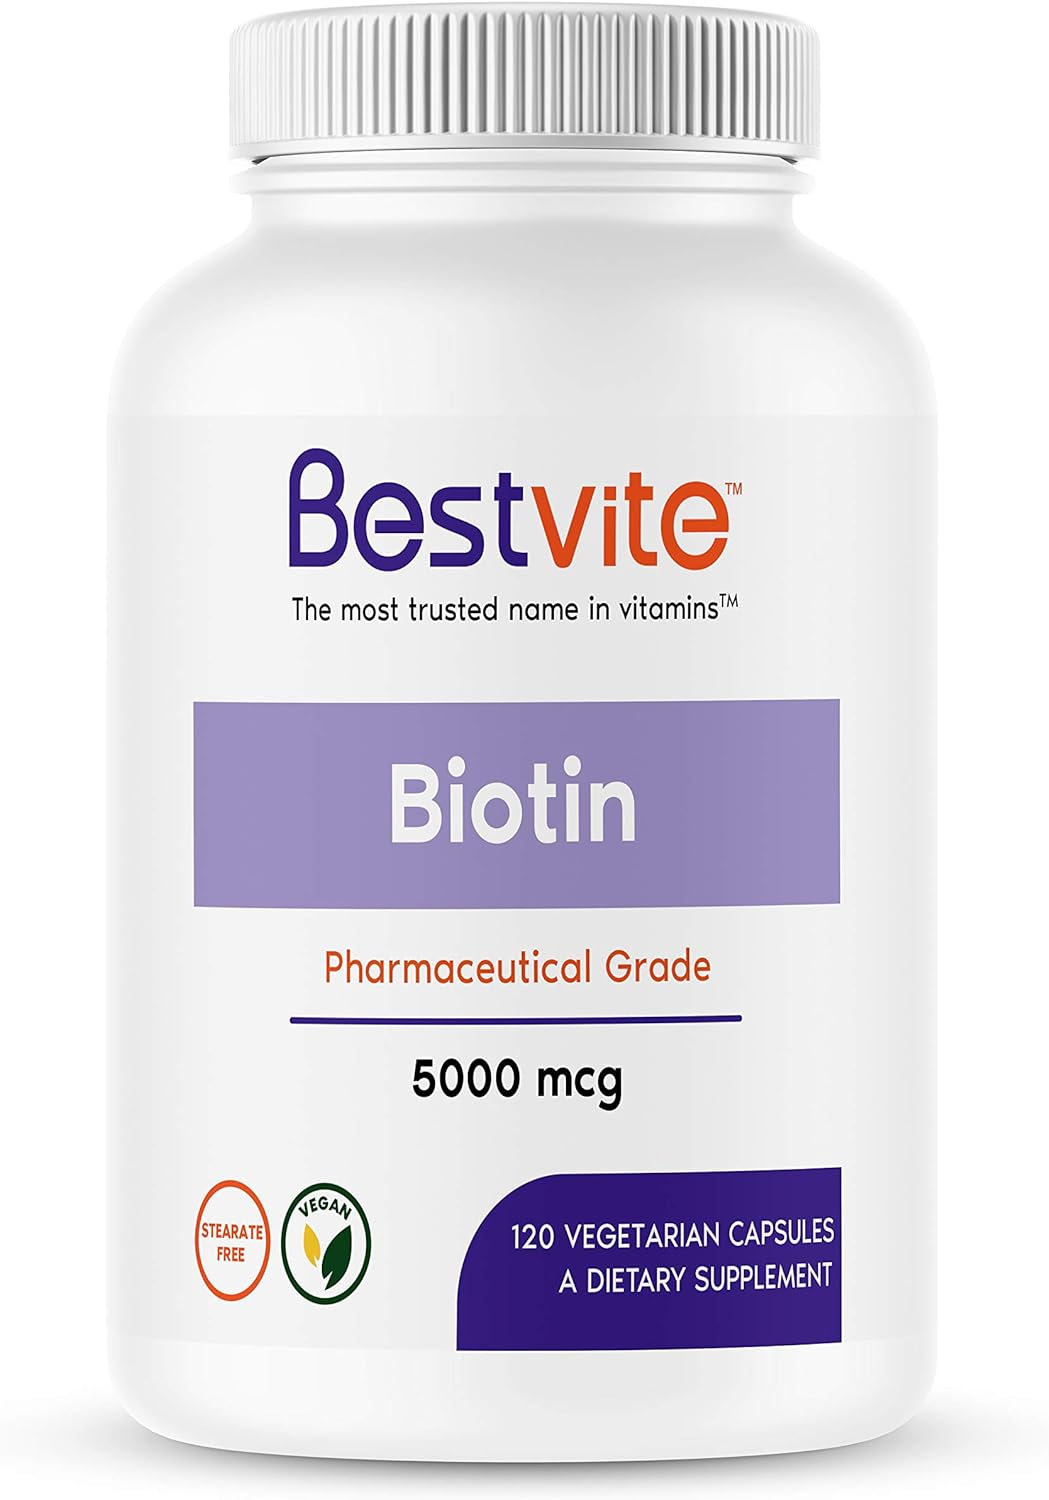 BESTVITE Biotin 5000mcg (120 Vegetarian Capsules) - No Stearates - No